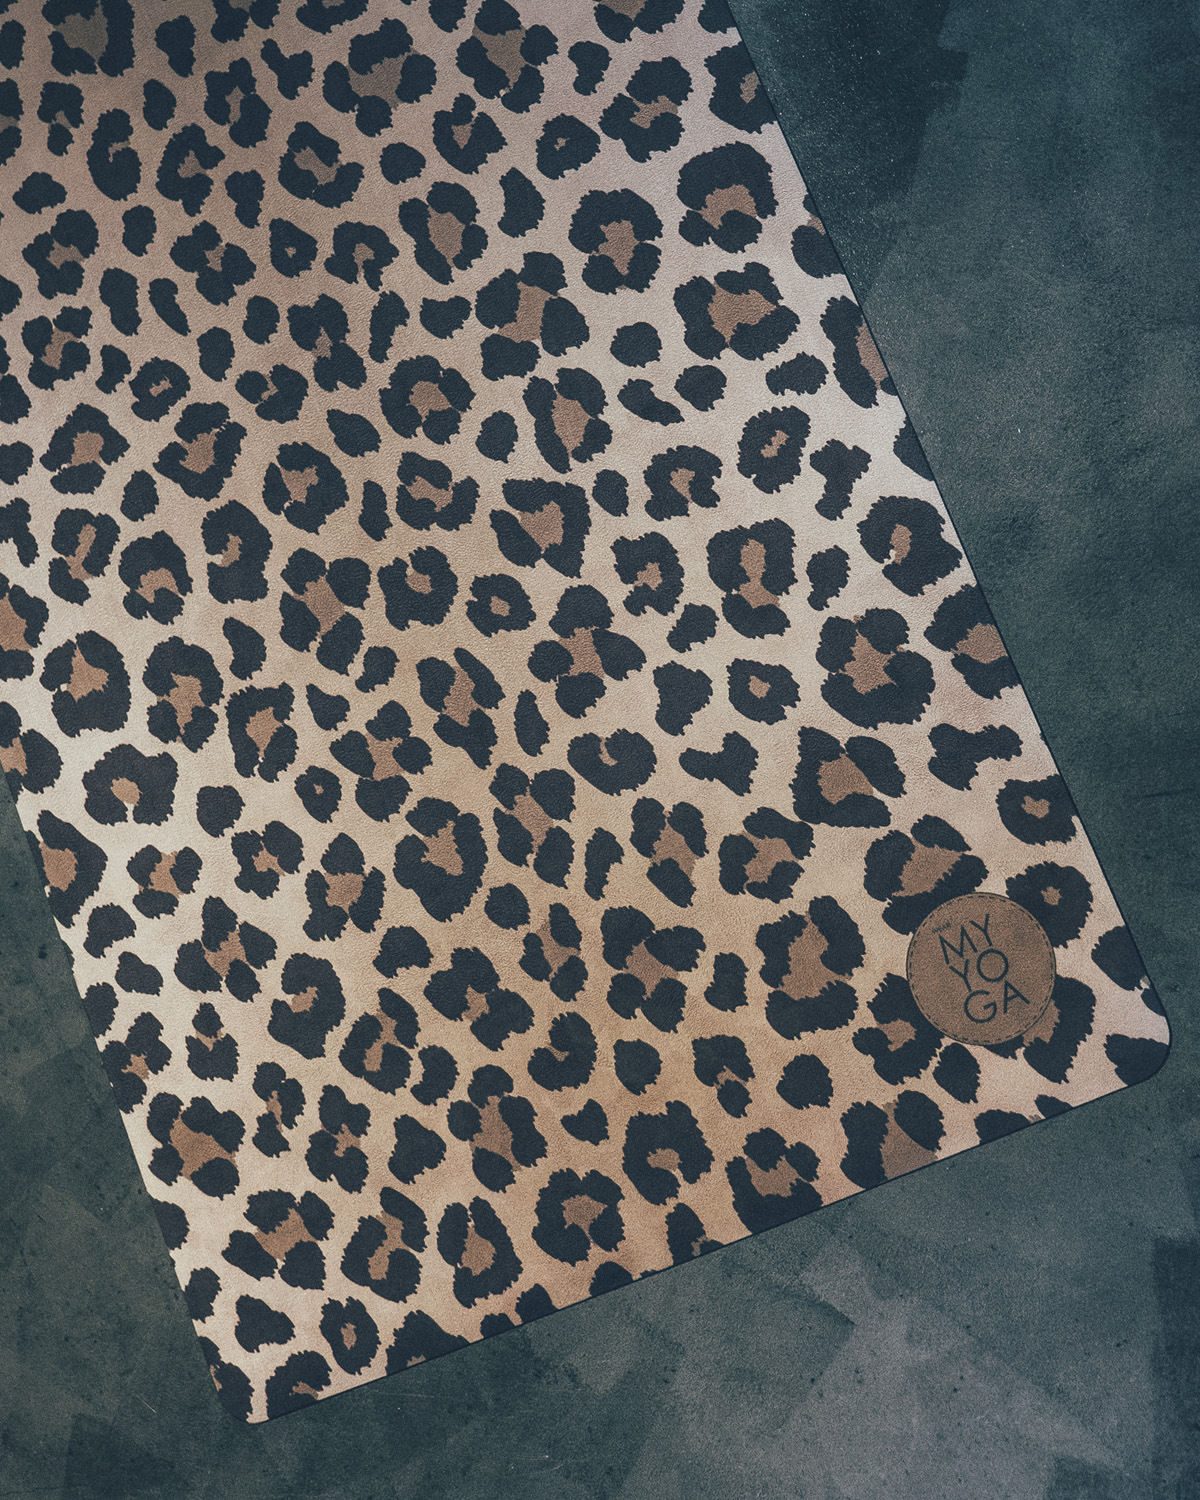 Leopard Print, Spots, Blue Leopard, Monogram Yoga Mat, Zazzle